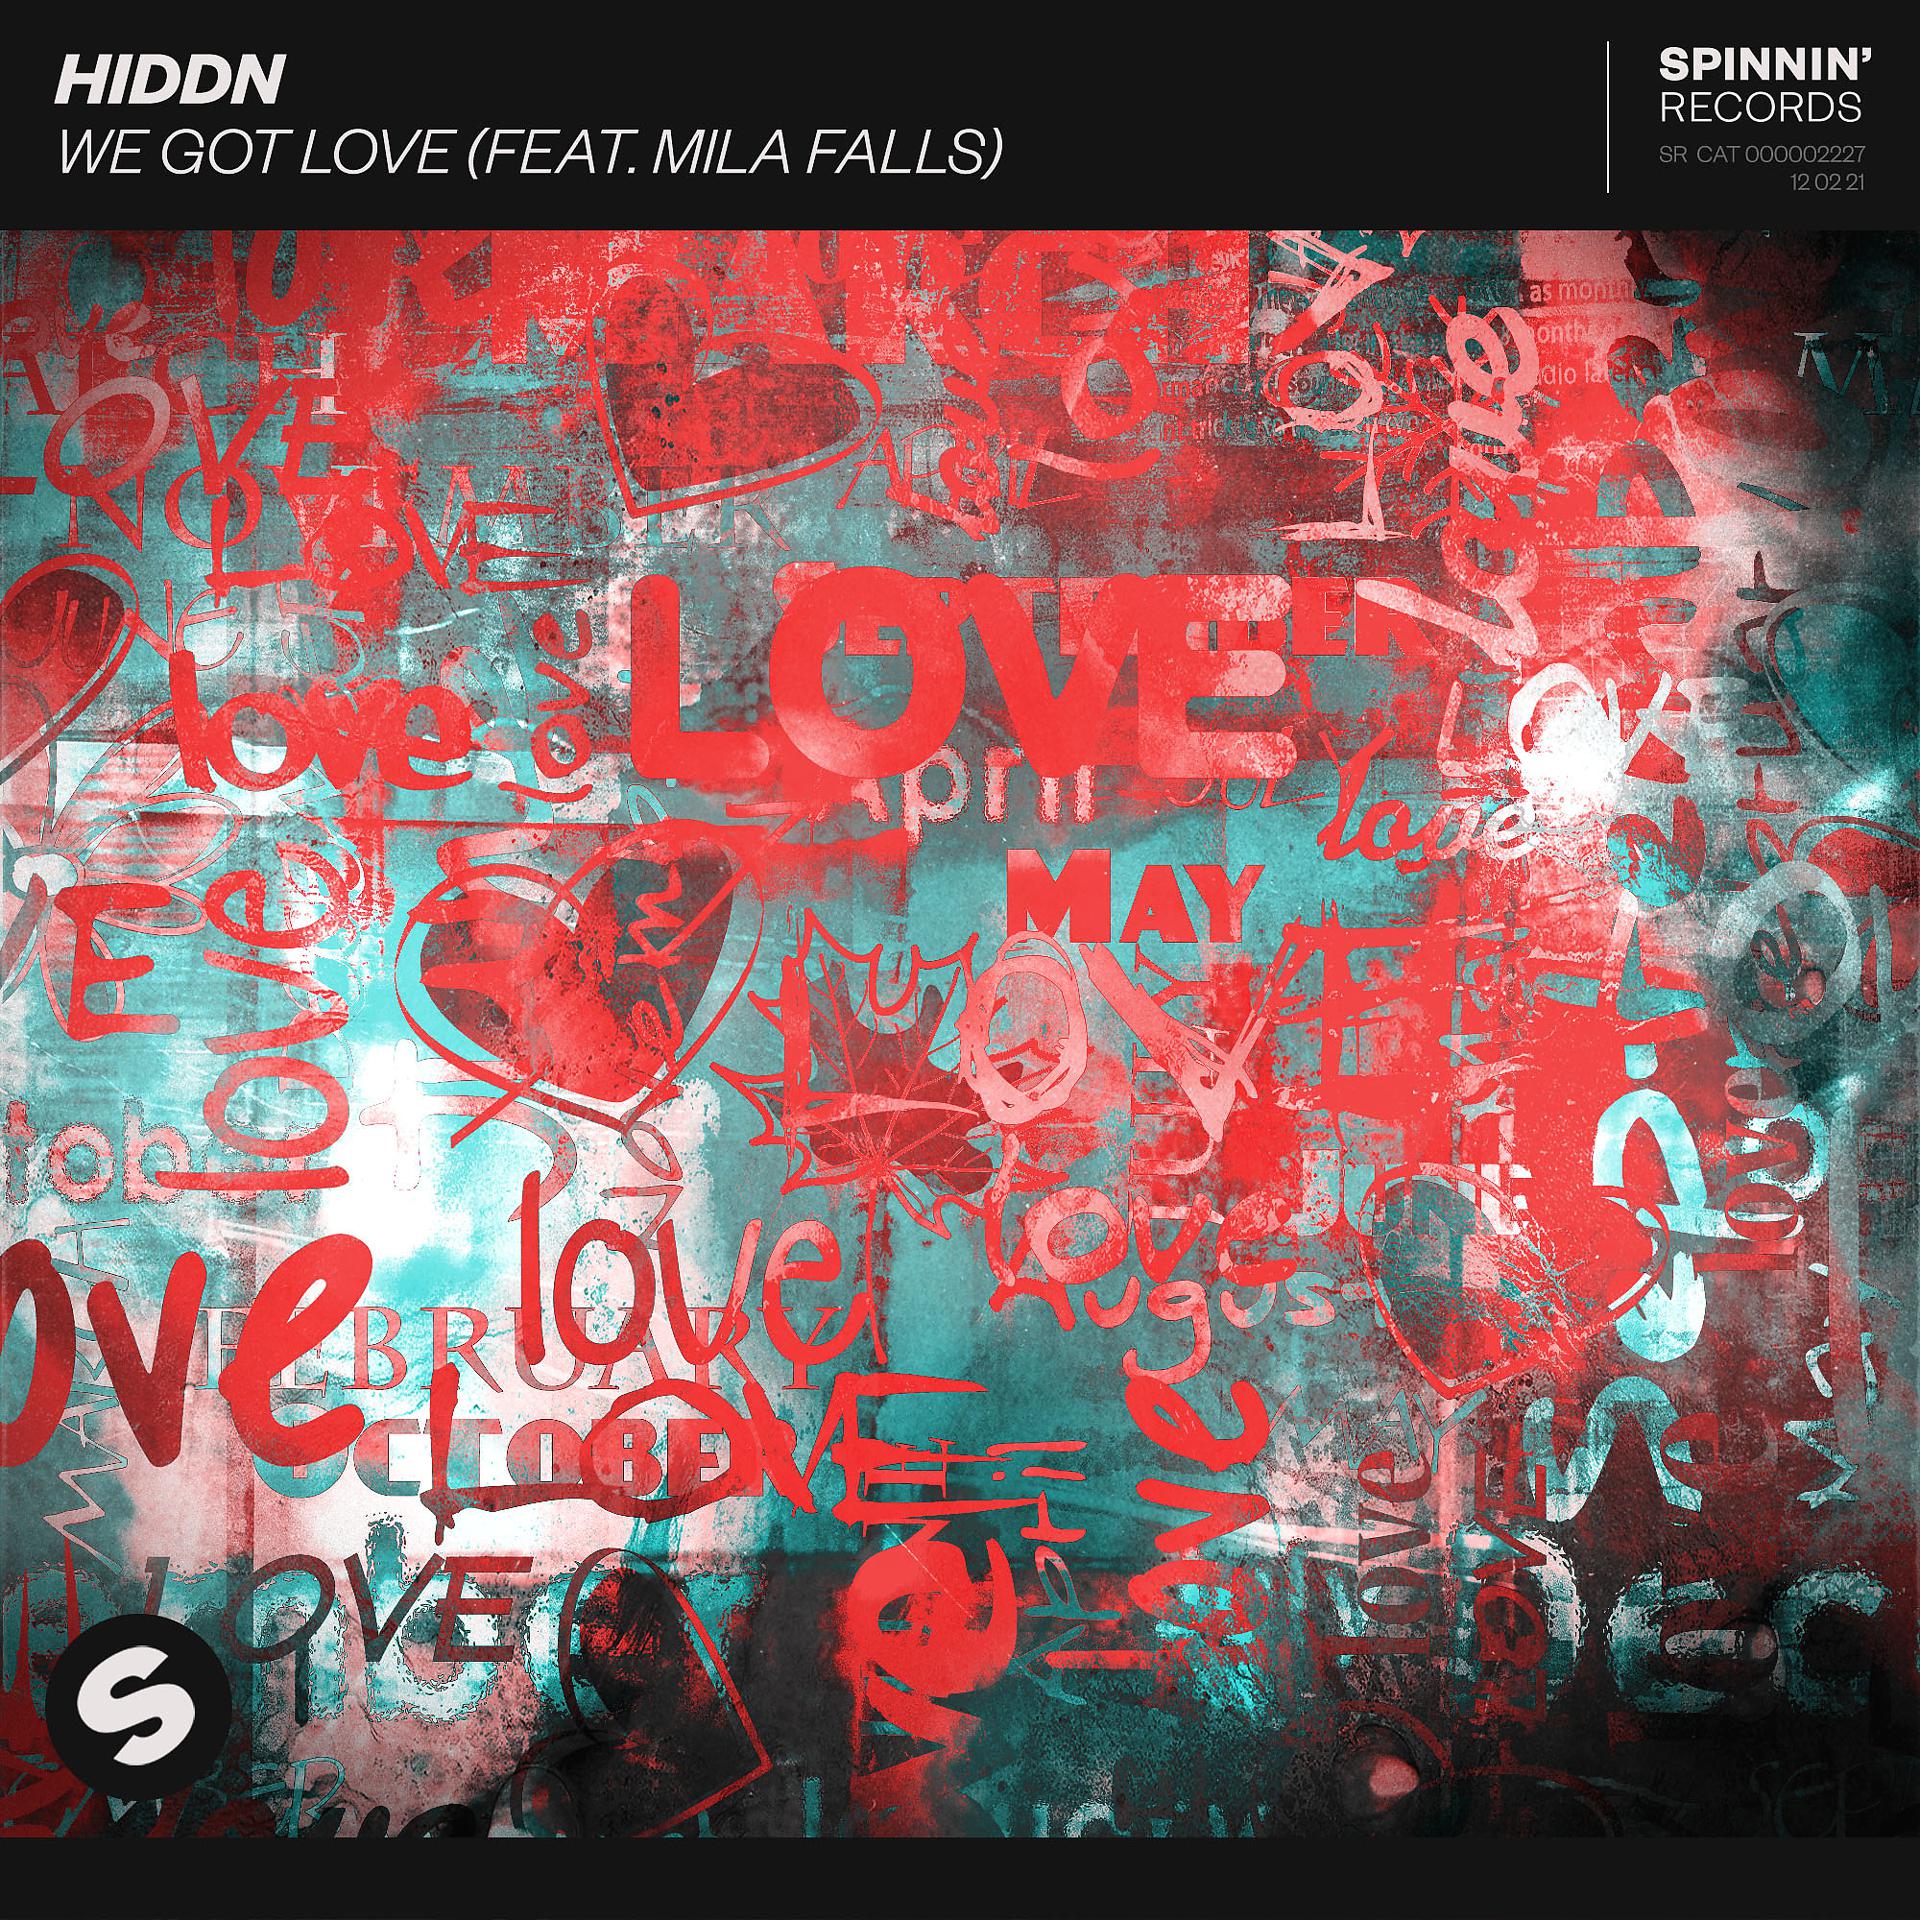 Featuring love. Hiddn/Mila Falls. We got Love. Medusa Love. We got get Love обложка.